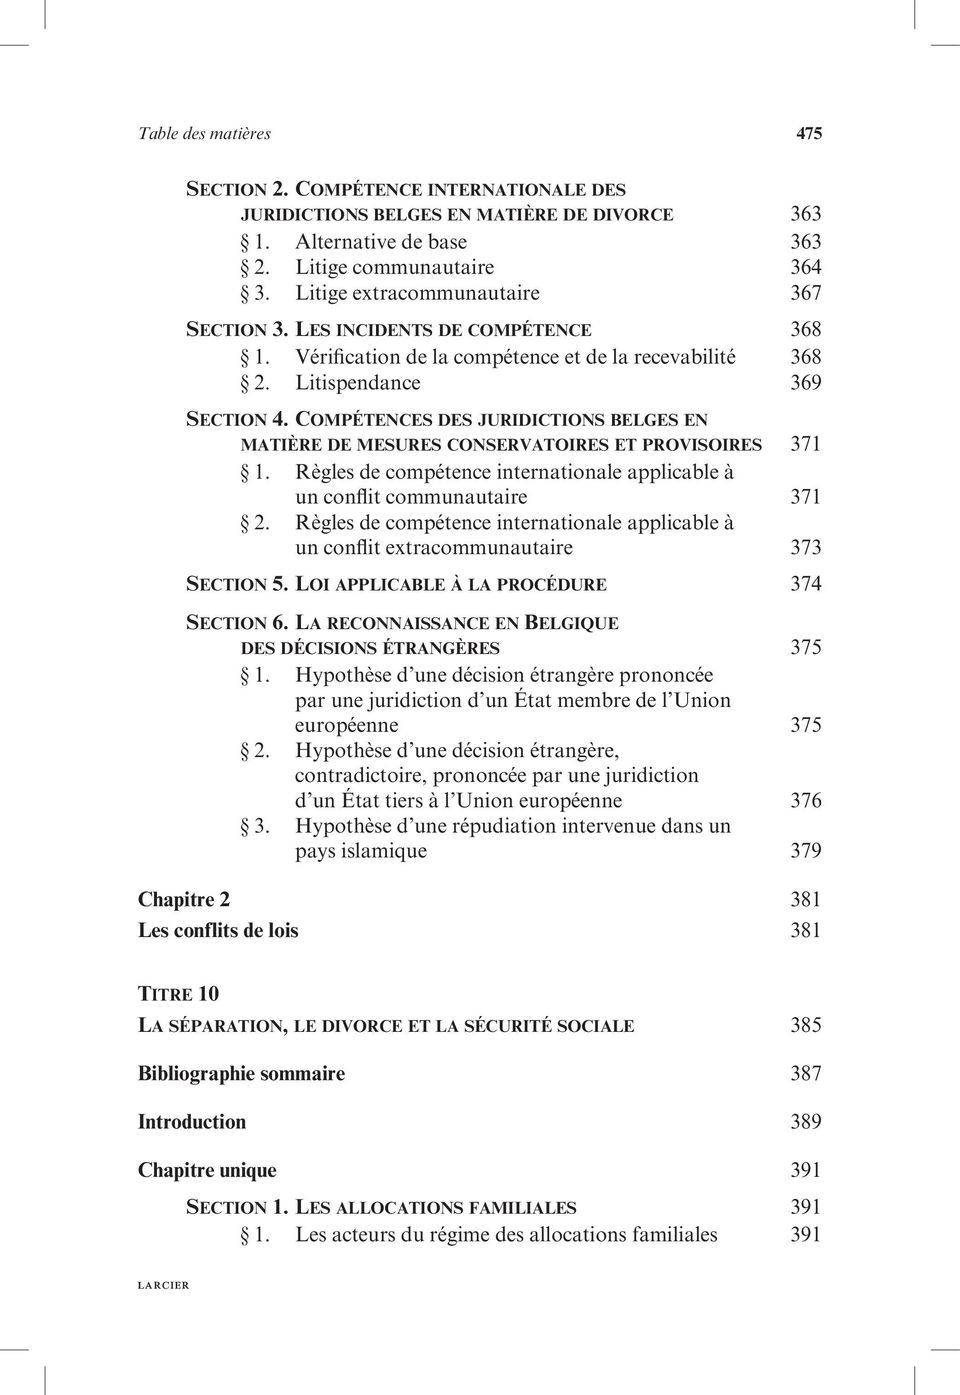 Compétences des juridictions belges en matière de mesures conservatoires et provisoires 371 1. Règles de compétence internationale applicable à un conflit communautaire 371 2.